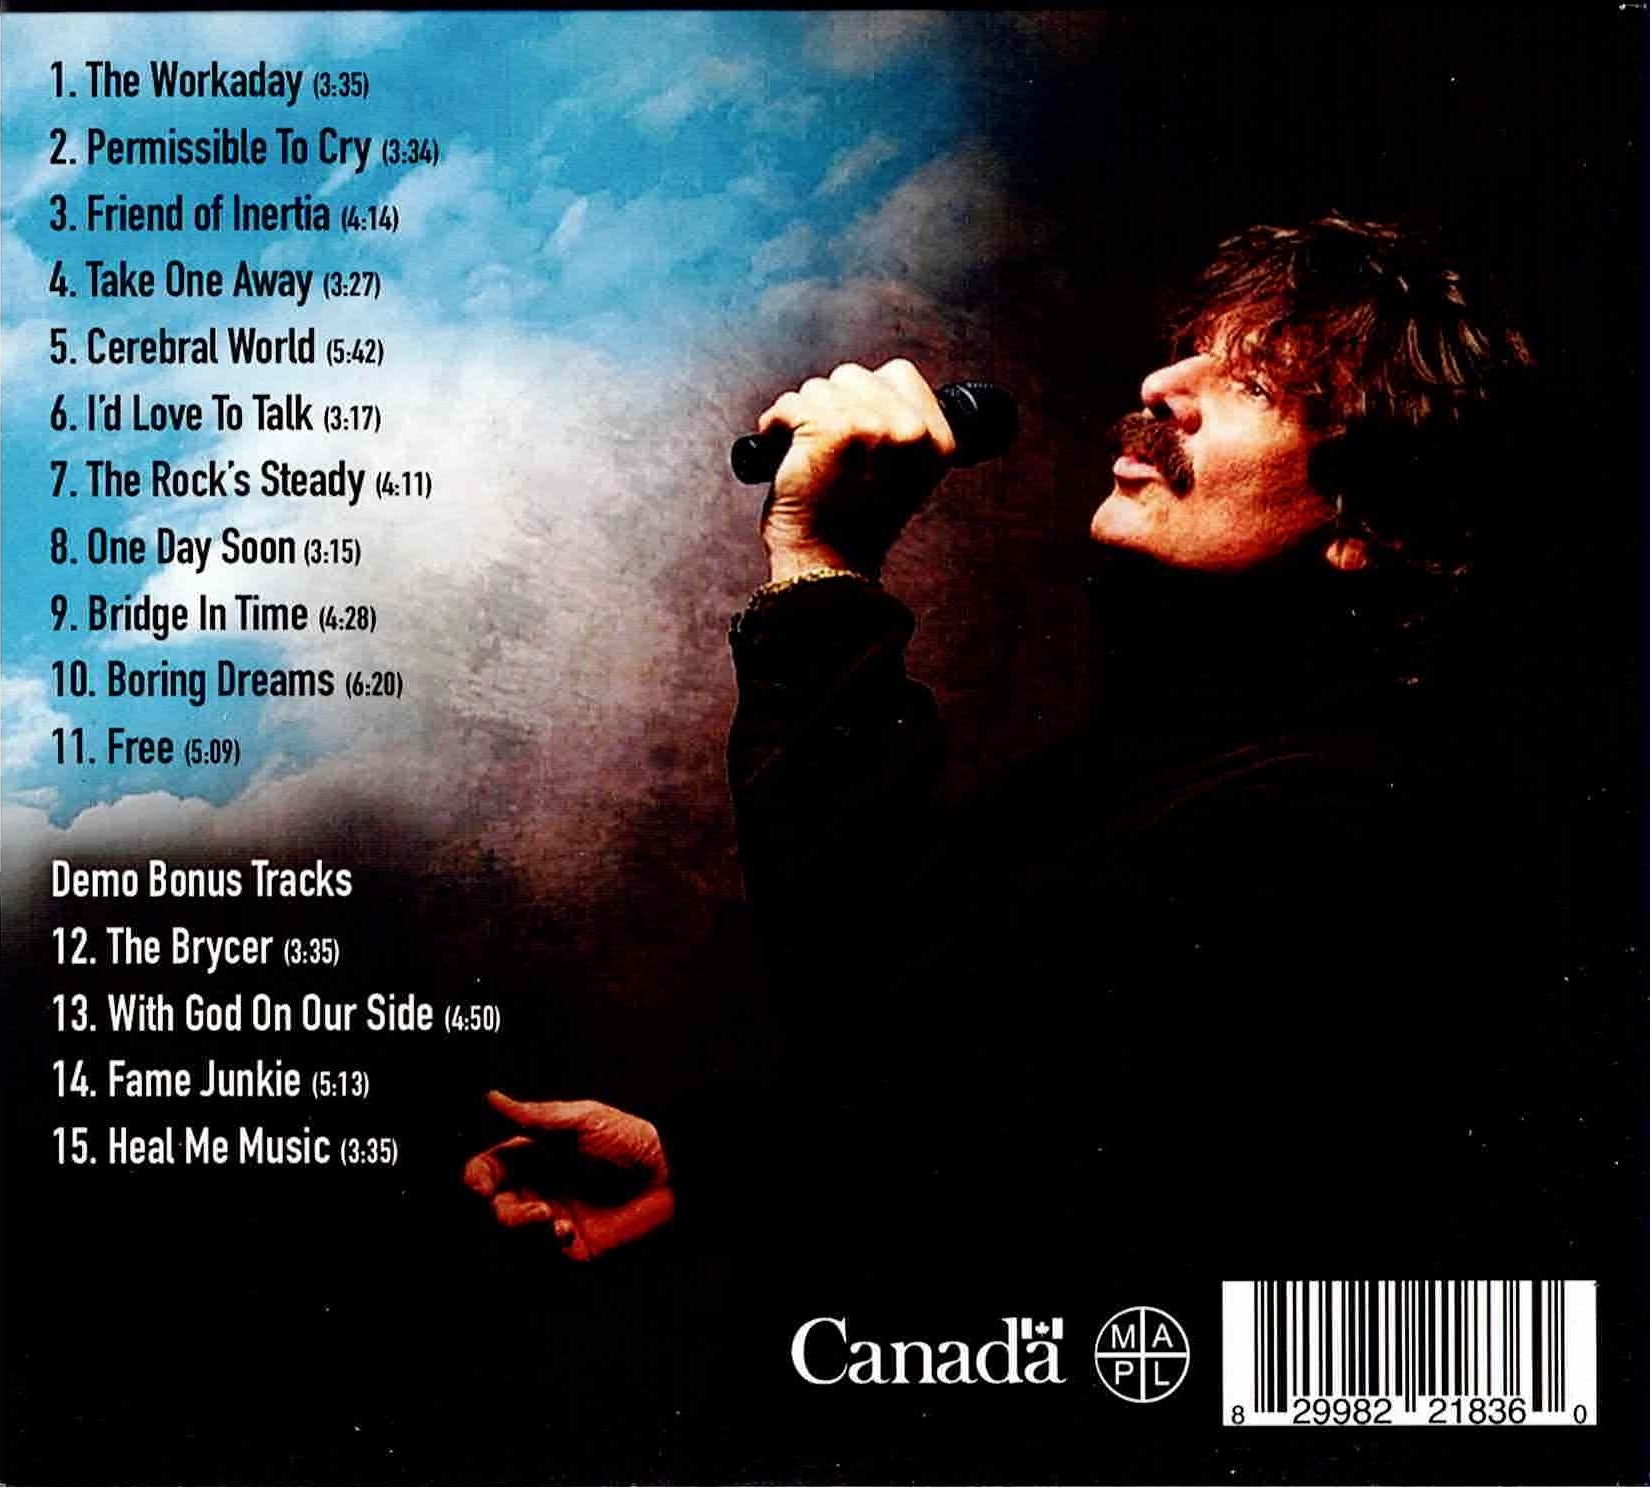 CD back cover